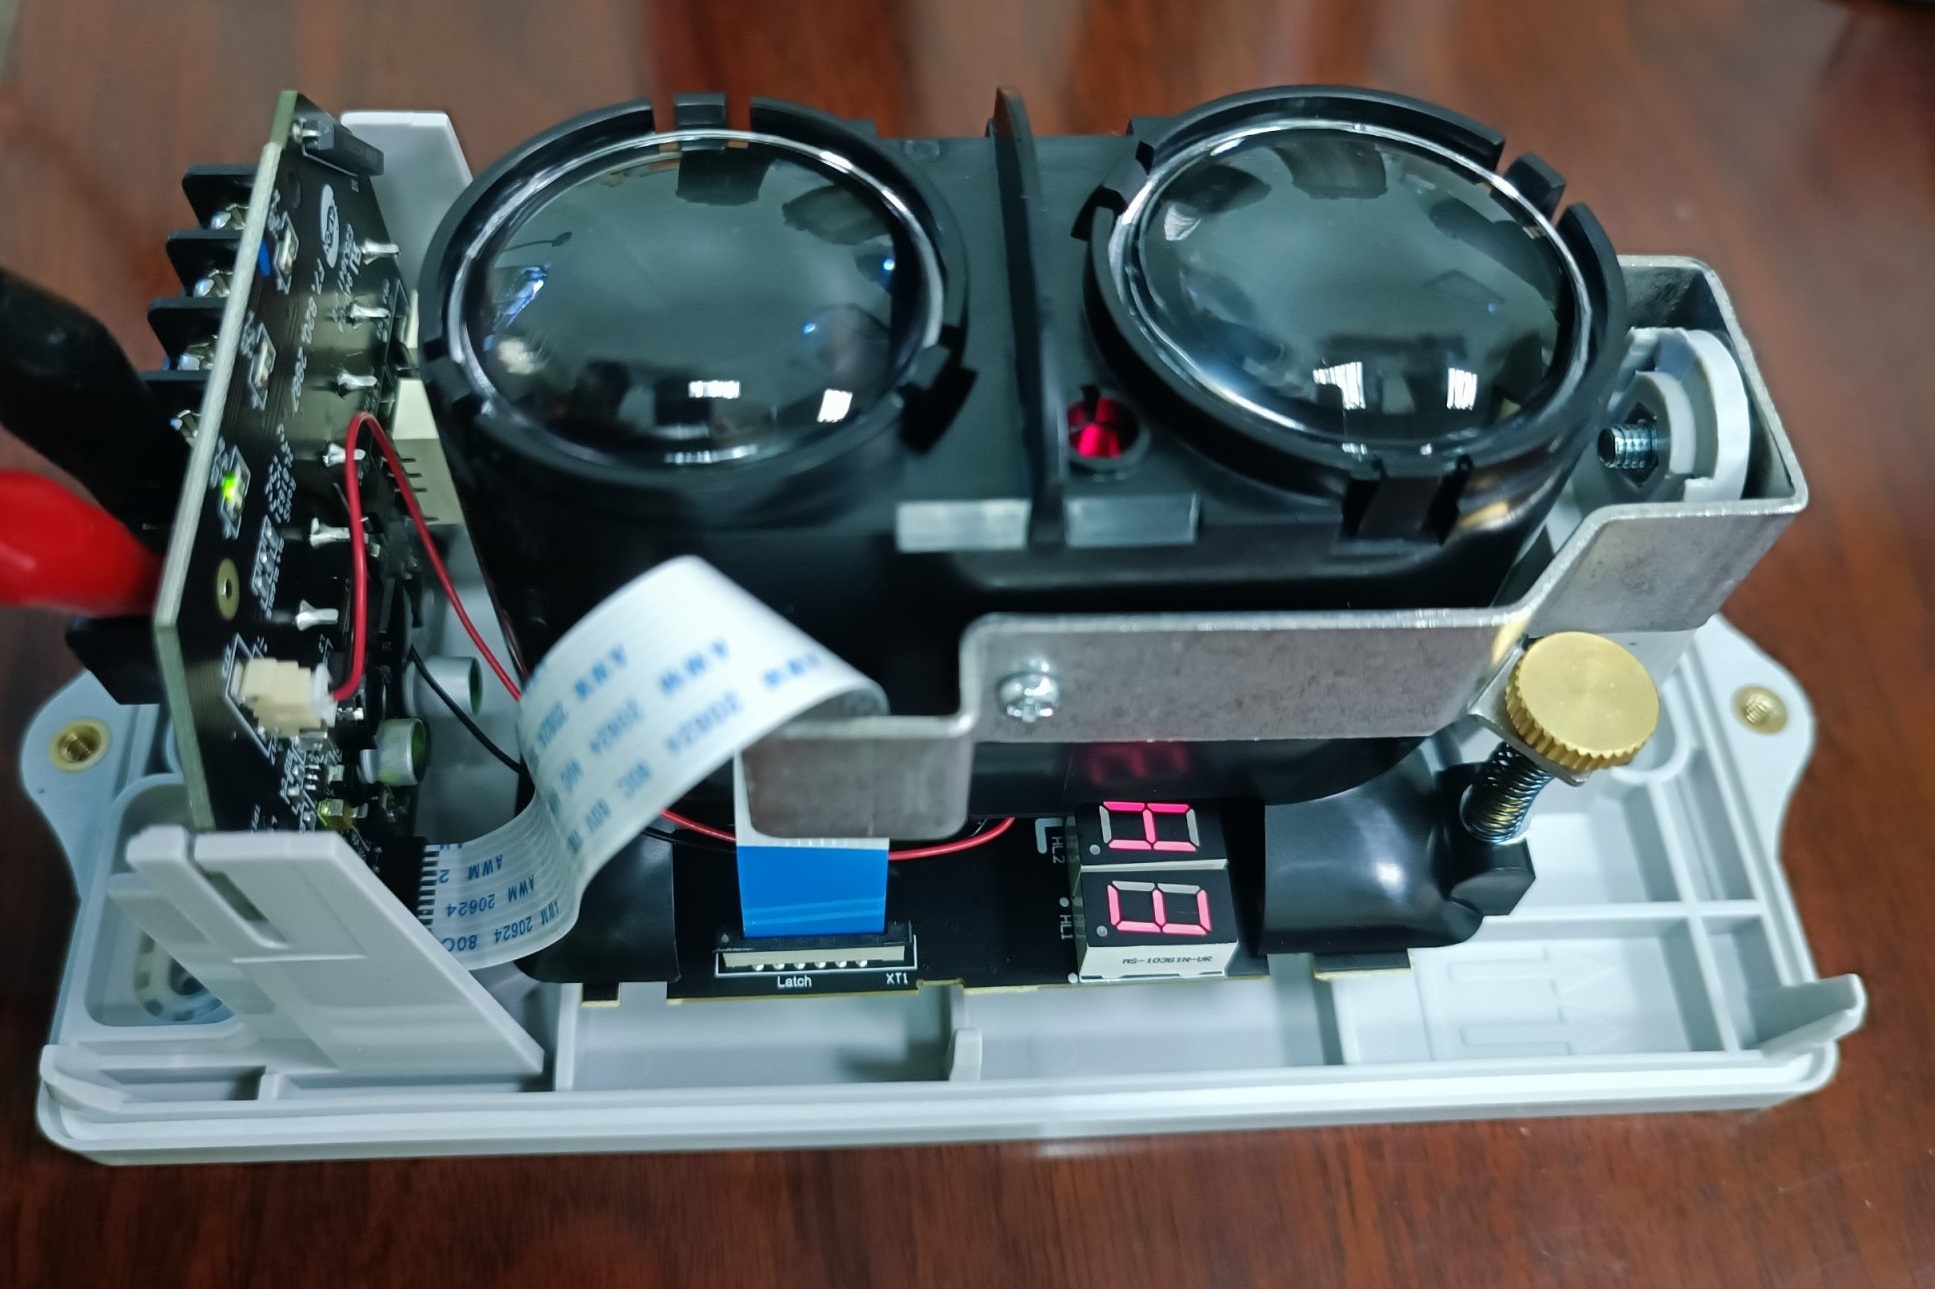 GST Intelligent Reflective Beam Detector